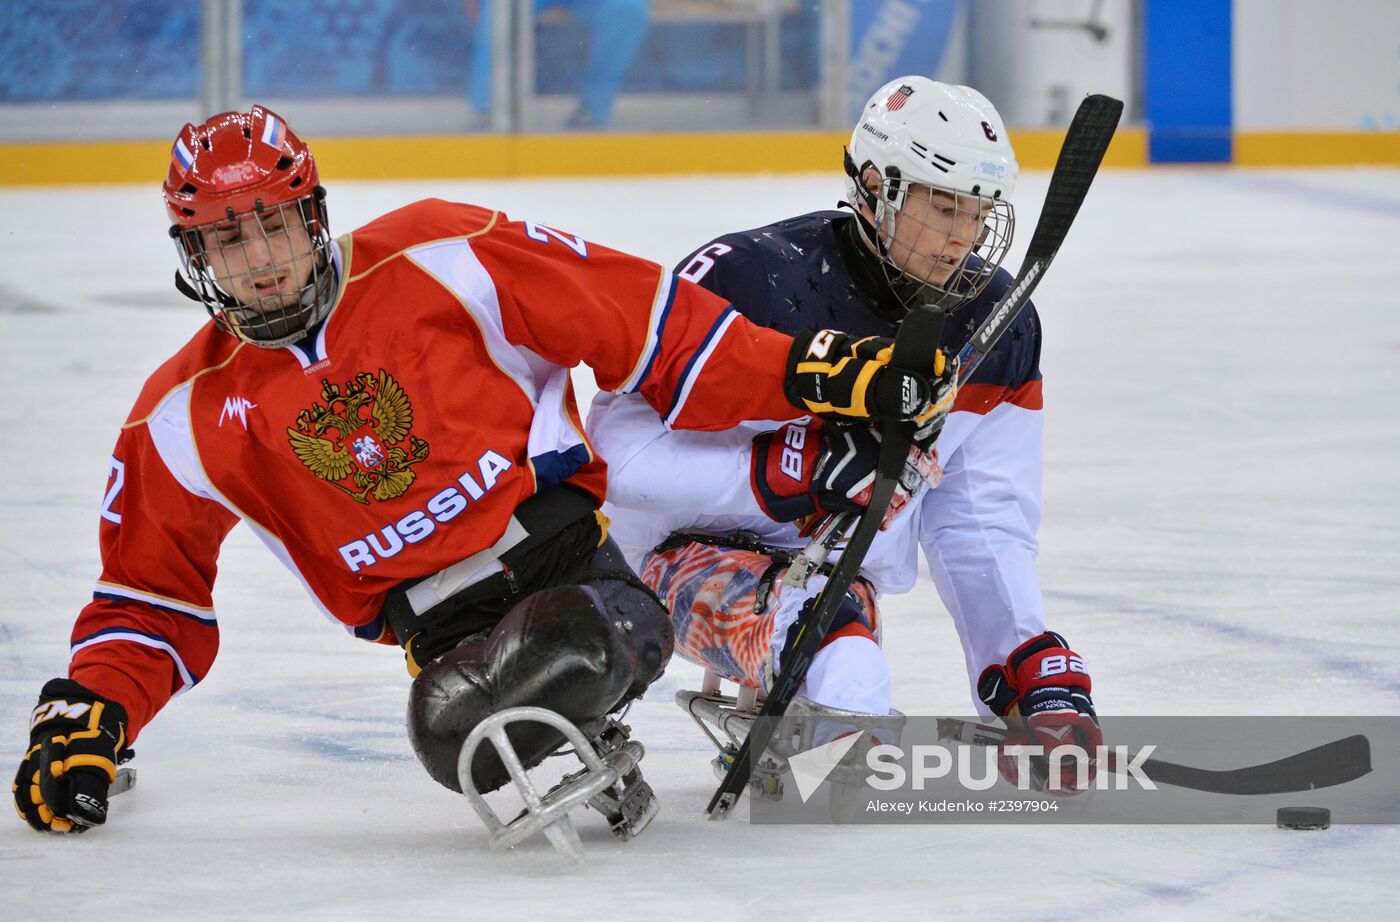 2014 Winter Paralympics. Ice sledge hockey. Finals